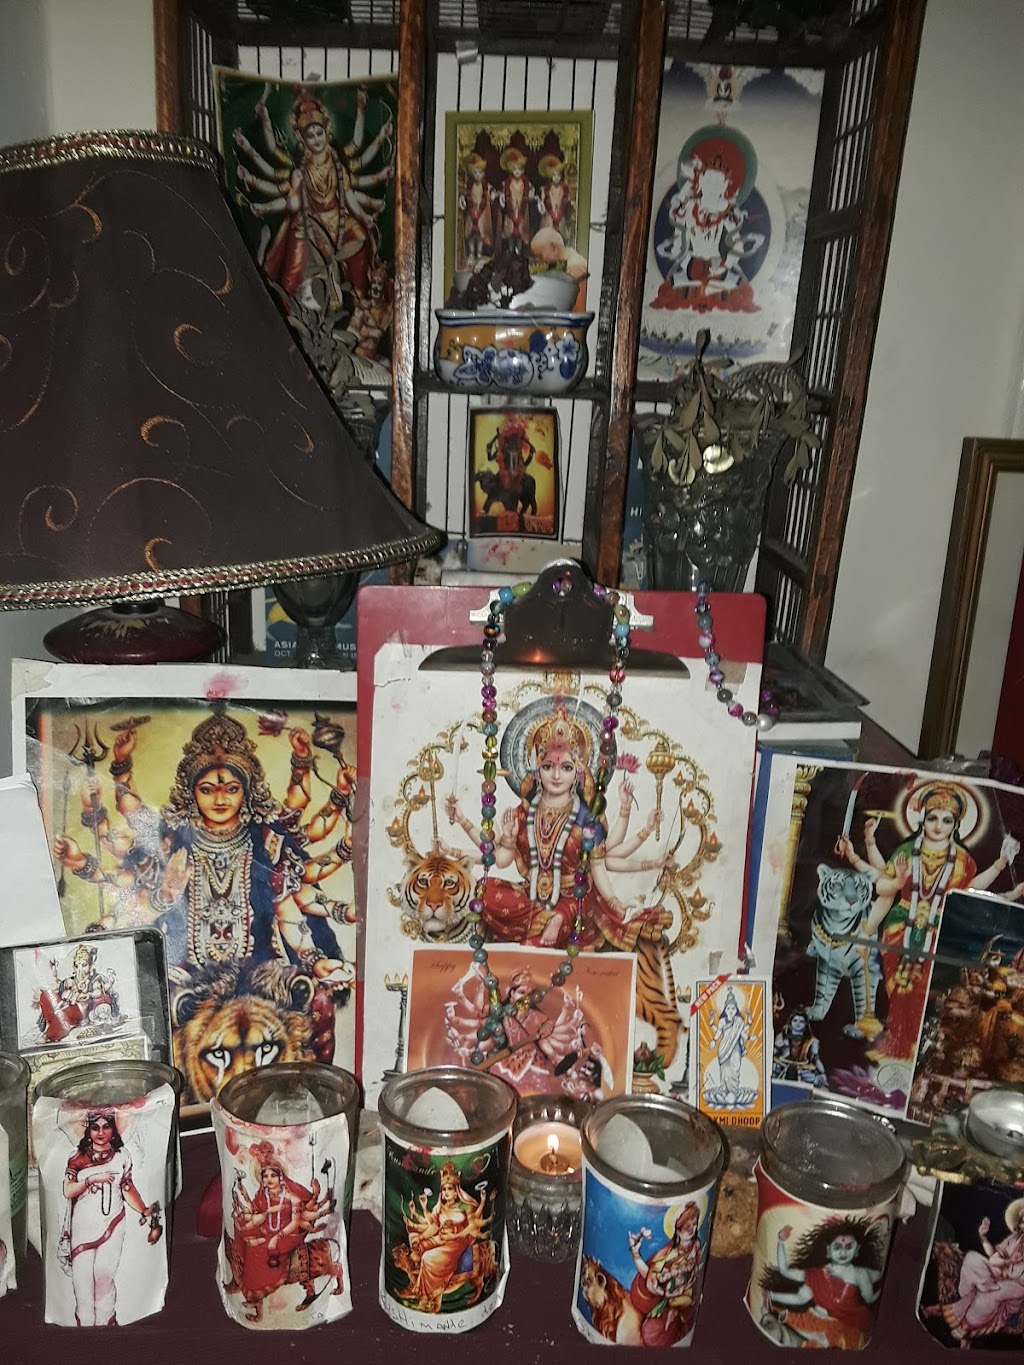 BAPS Shri Swaminarayan Mandir | 950 Avalon Ave, San Francisco, CA 94112 | Phone: (415) 469-9121